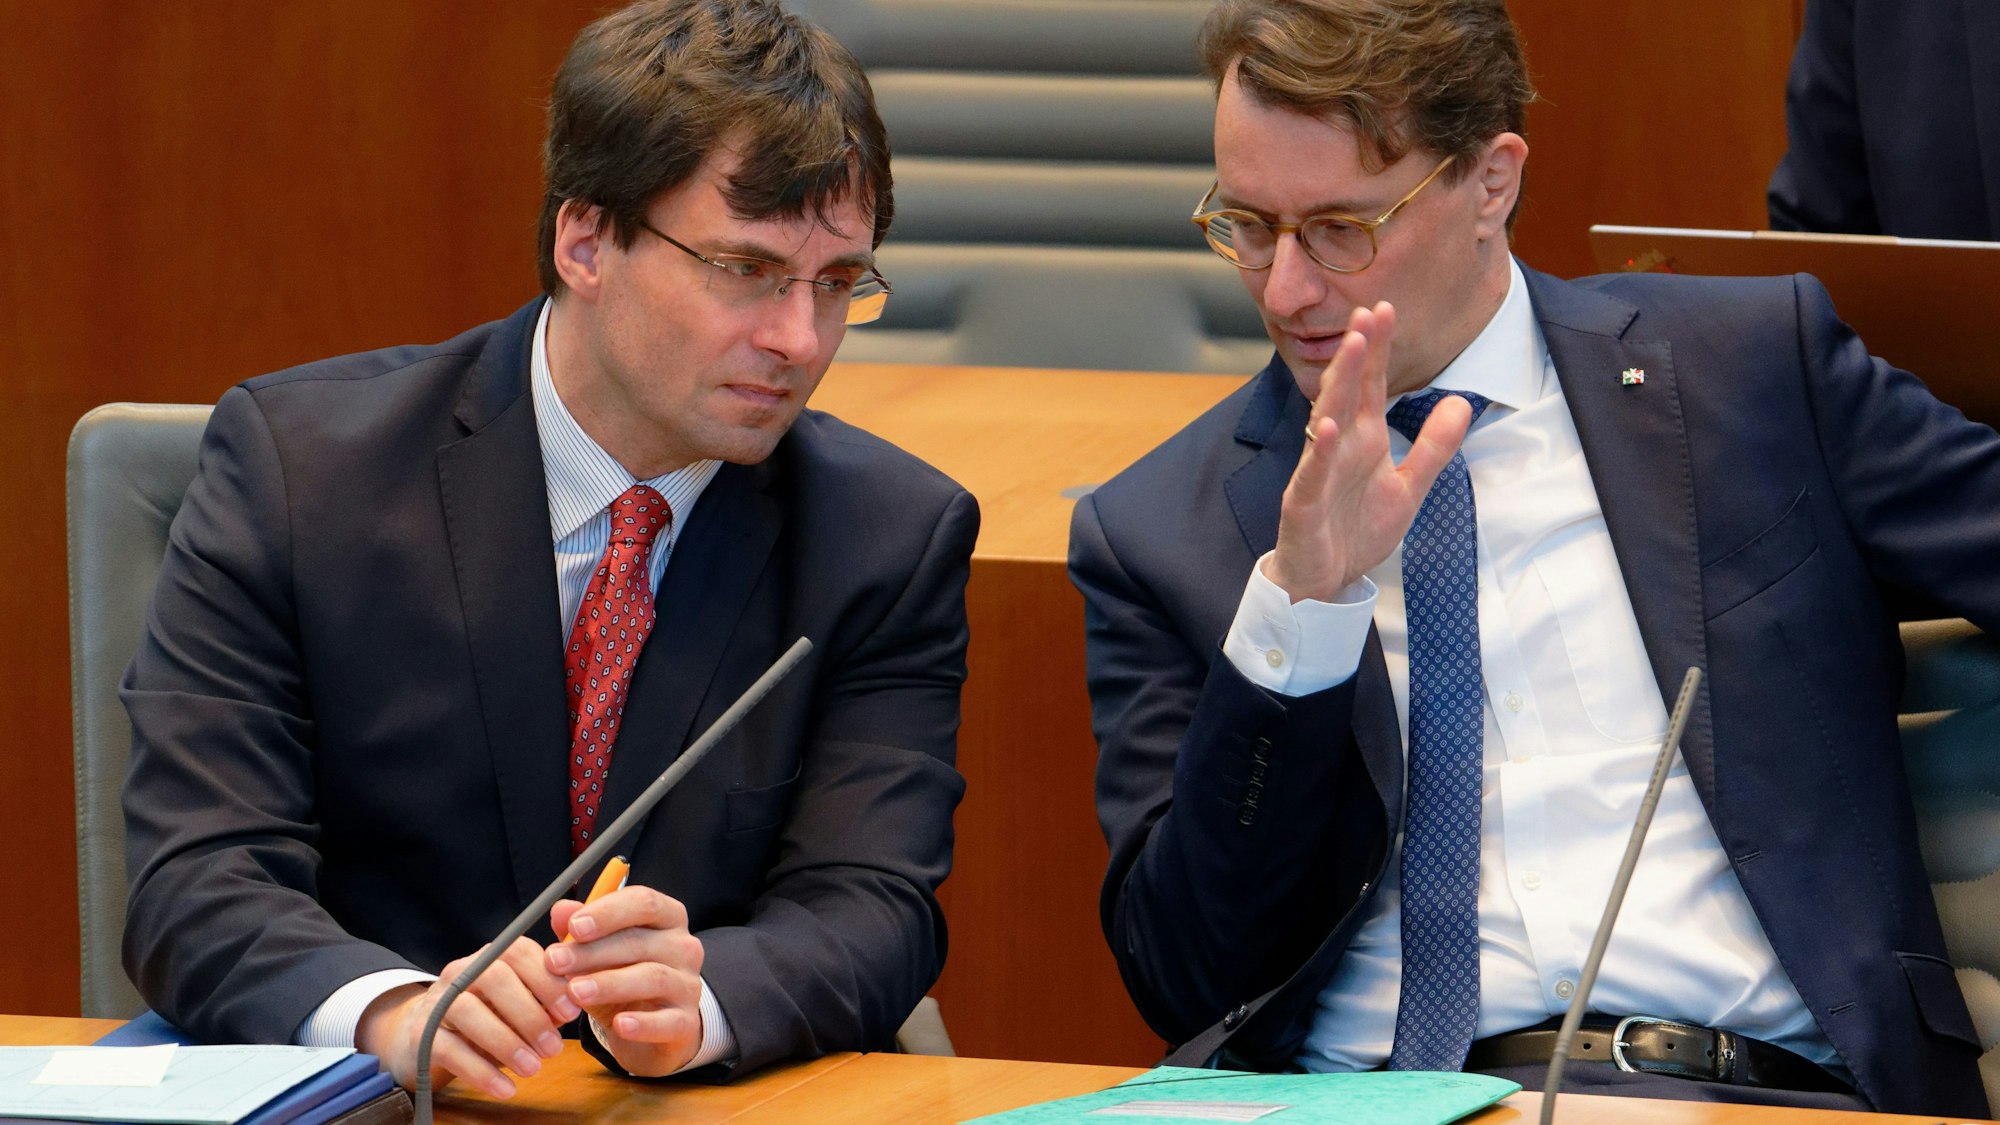 Marcus Optendrenk, Finanzminister des Landes Nordrhein-Westfalen (links, CDU), und Hendrik Wüst, Ministerpräsident von NRW (r.) sitzen bei einer Aktuellen Stunde im Landtag von Nordrhein-Westfalen im Plenum.